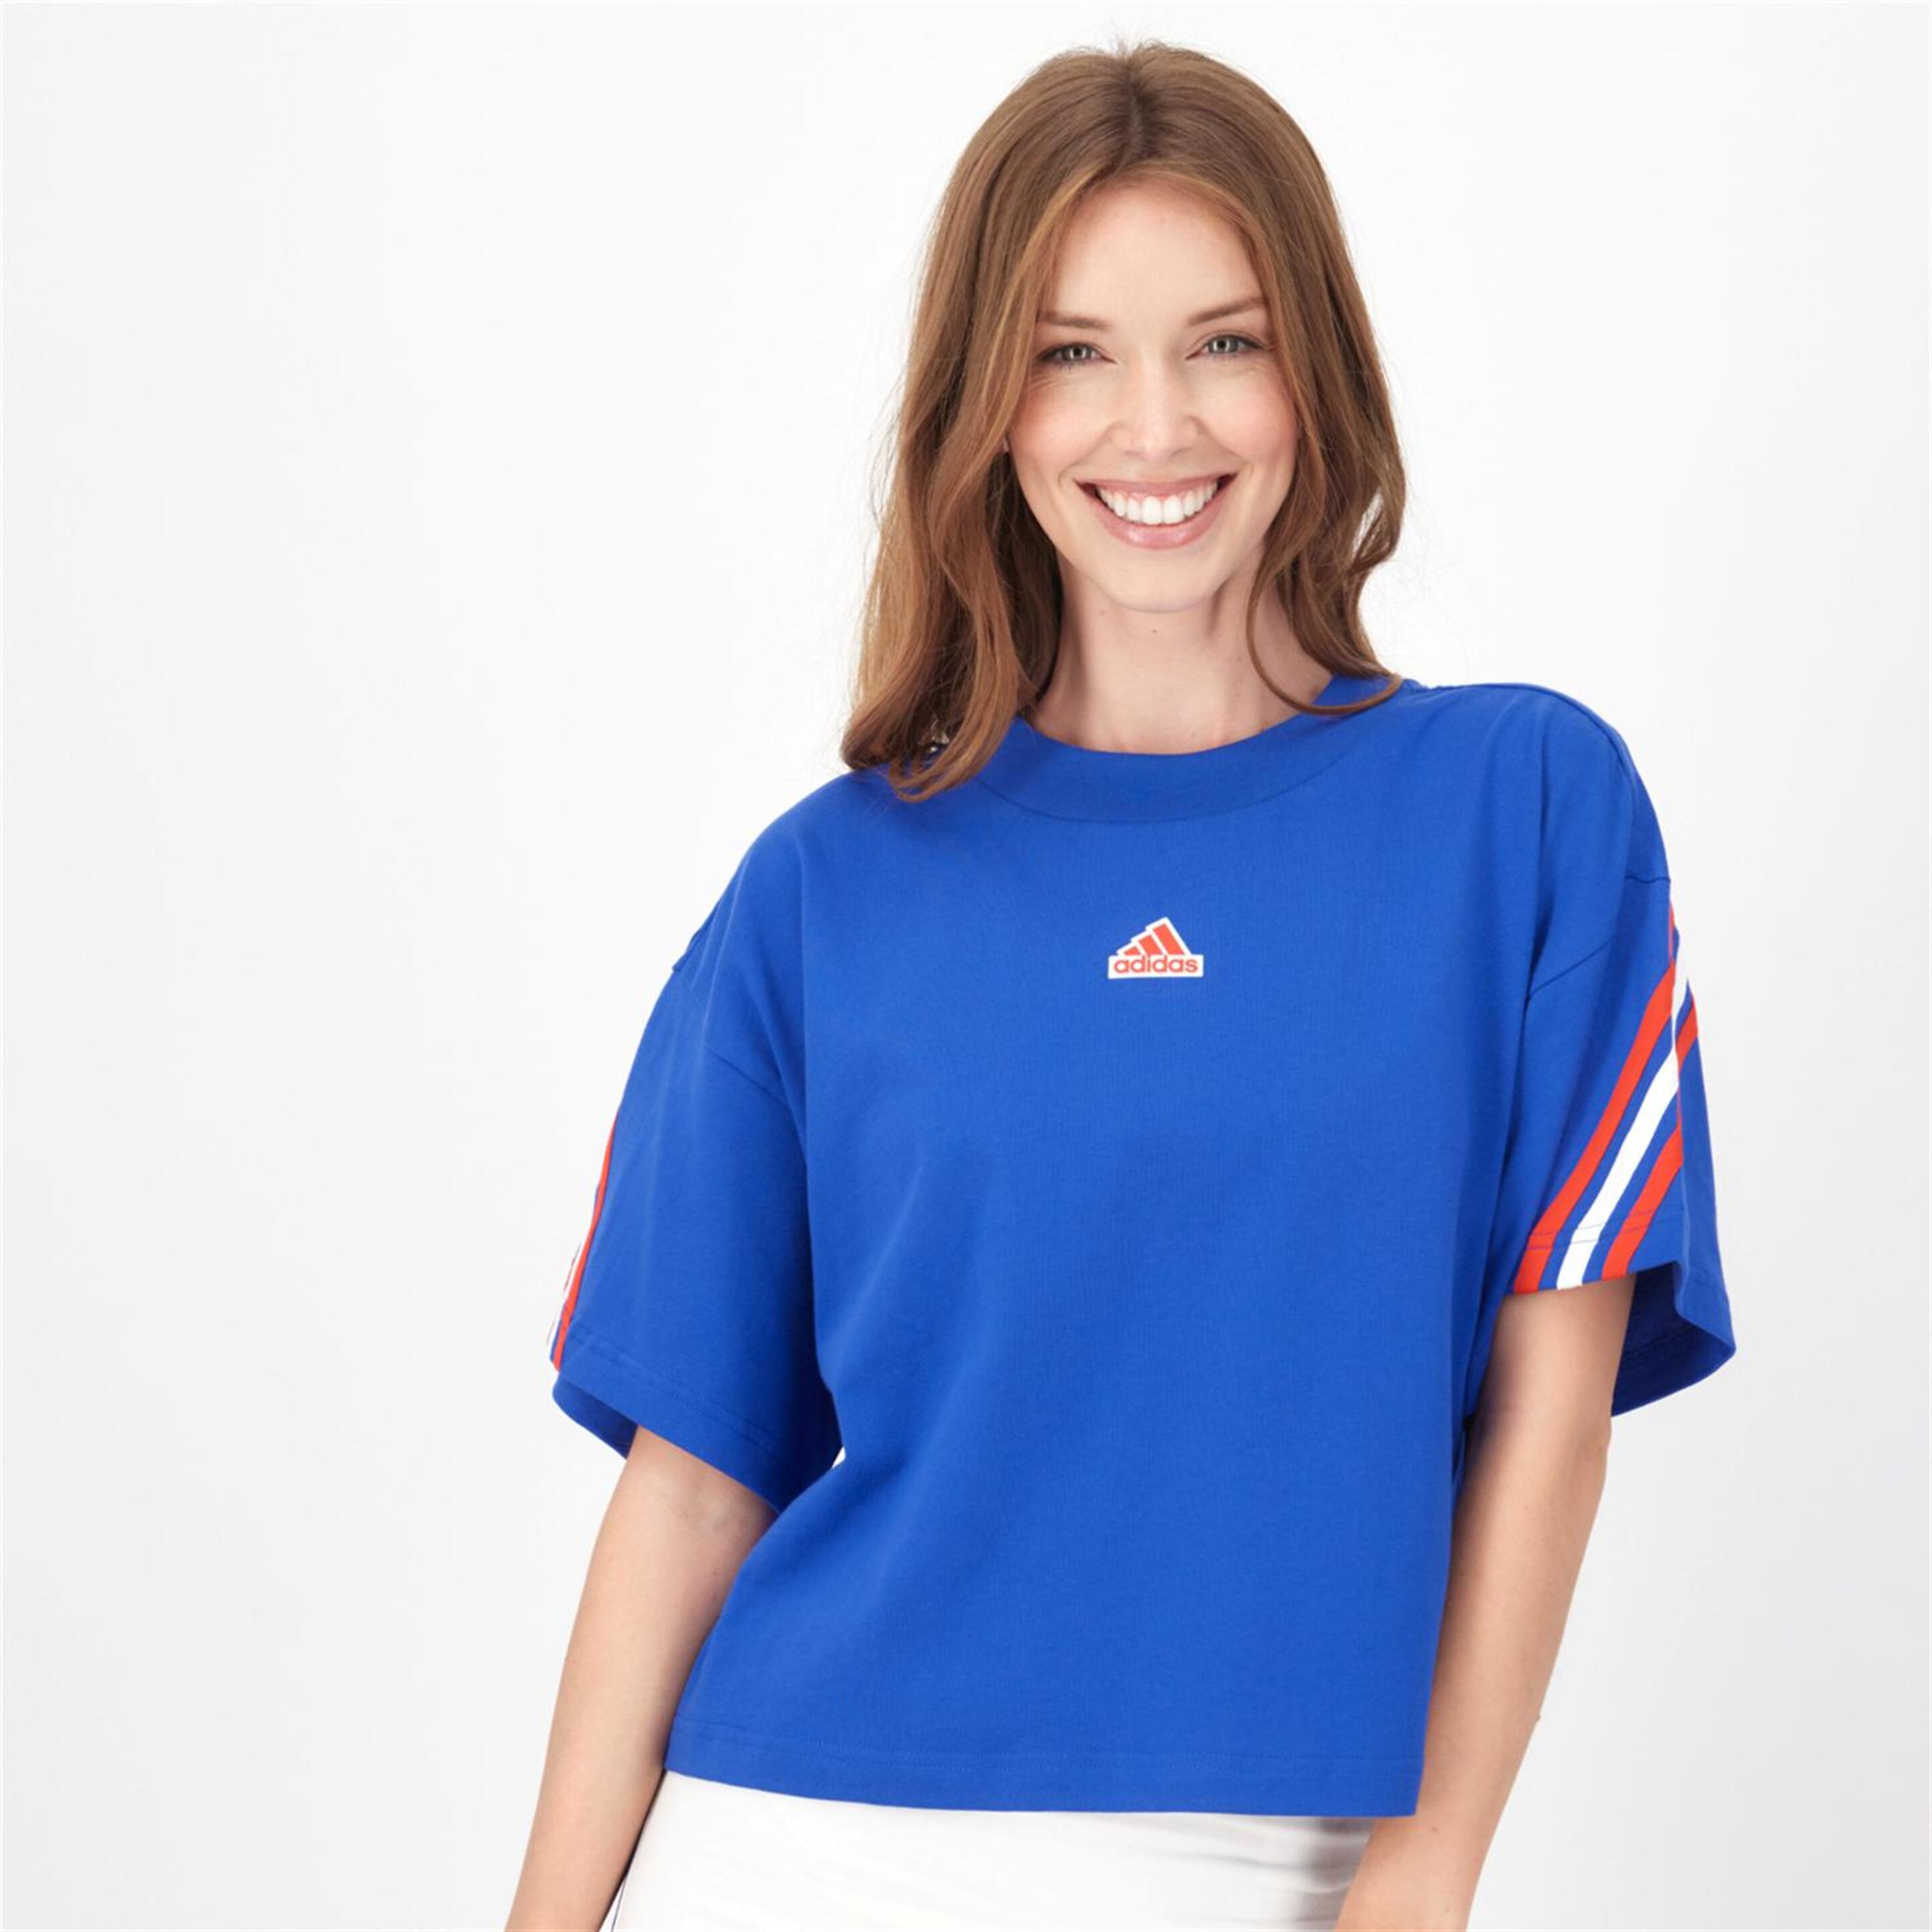 adidas 3 Stripes - Azul - Camiseta Mujer